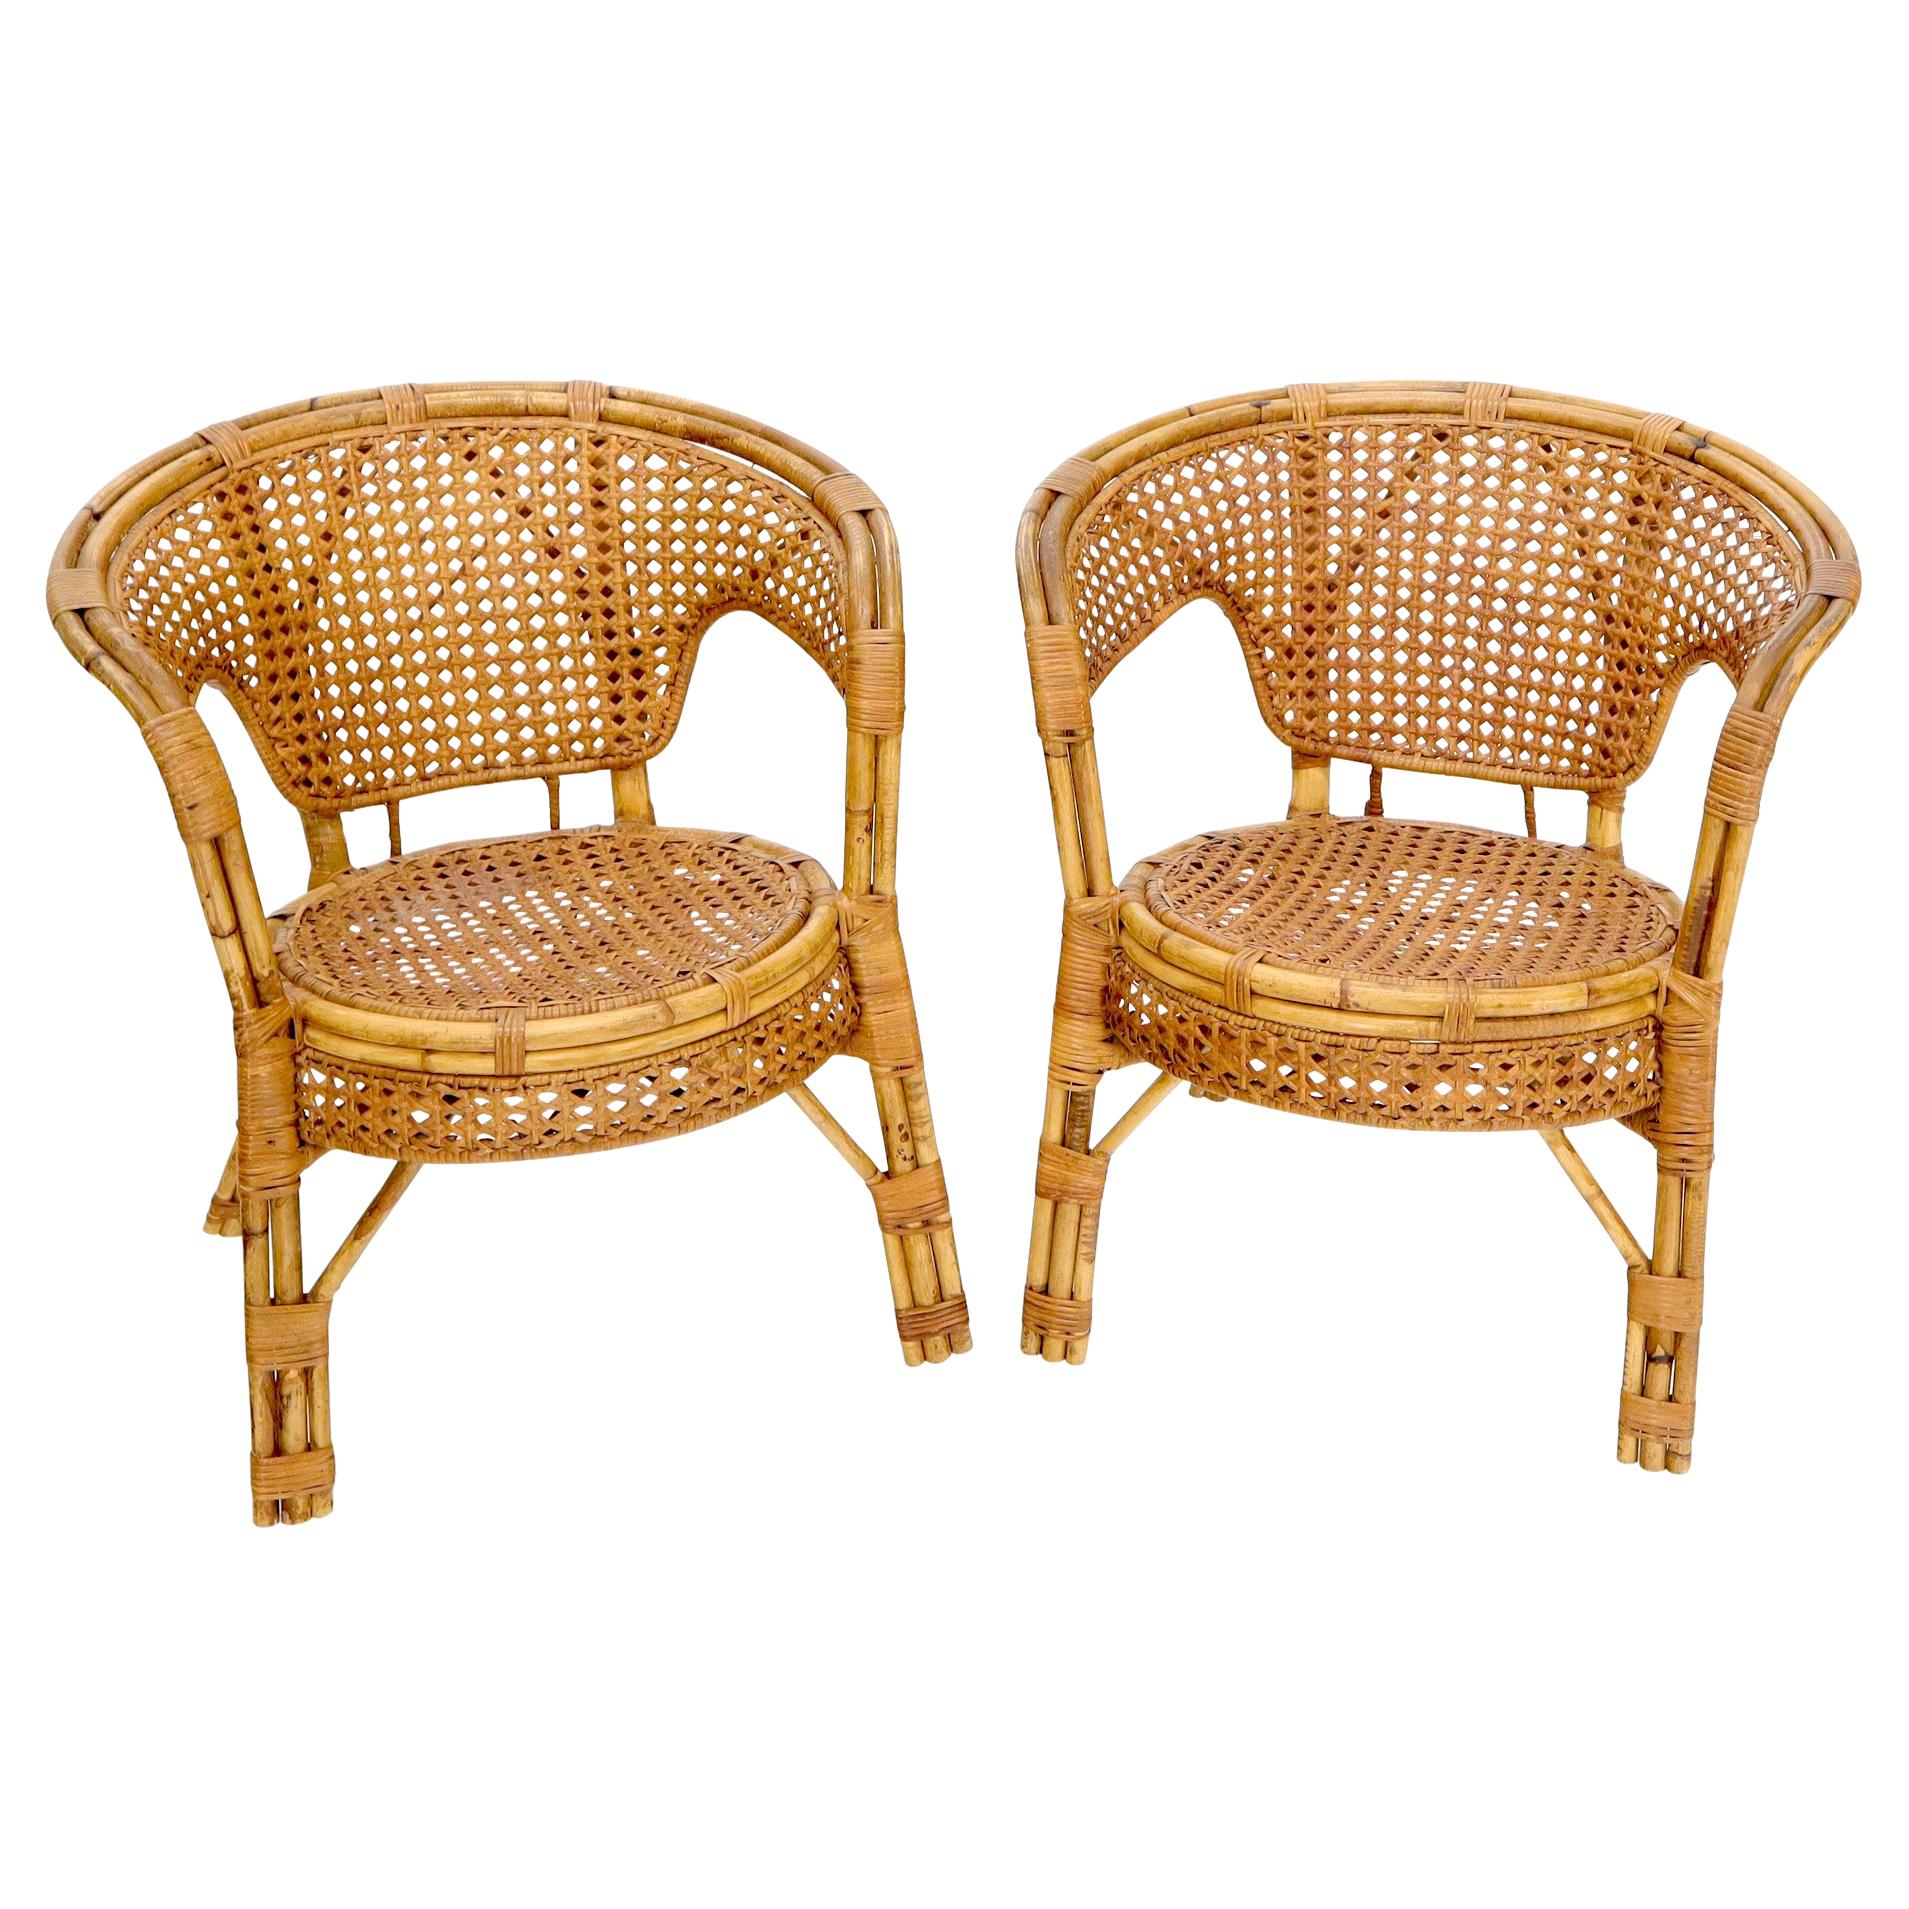 Zwei atemberaubende runde Bambus-Rattan-Sessel in Fassform mit Rohrstühlen